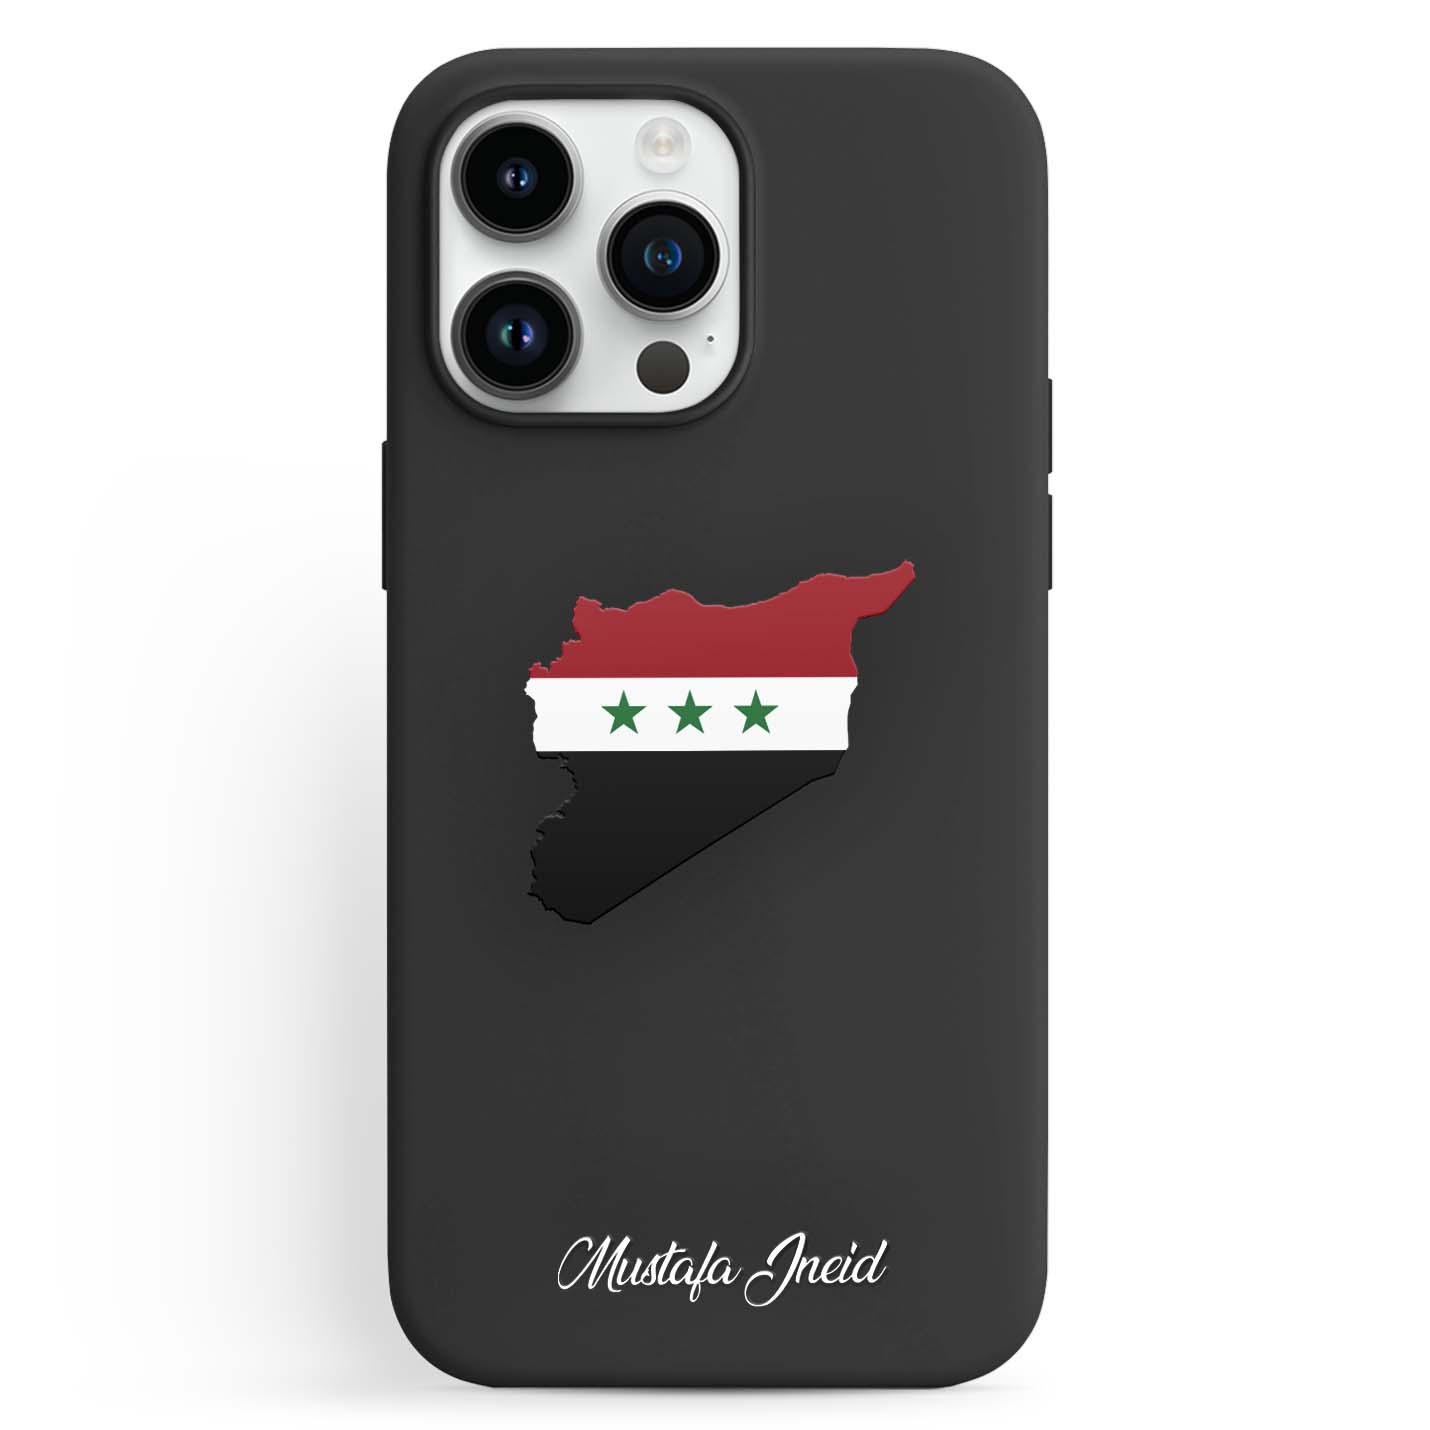 Handyhüllen mit Flagge - Syrien - 1instaphone